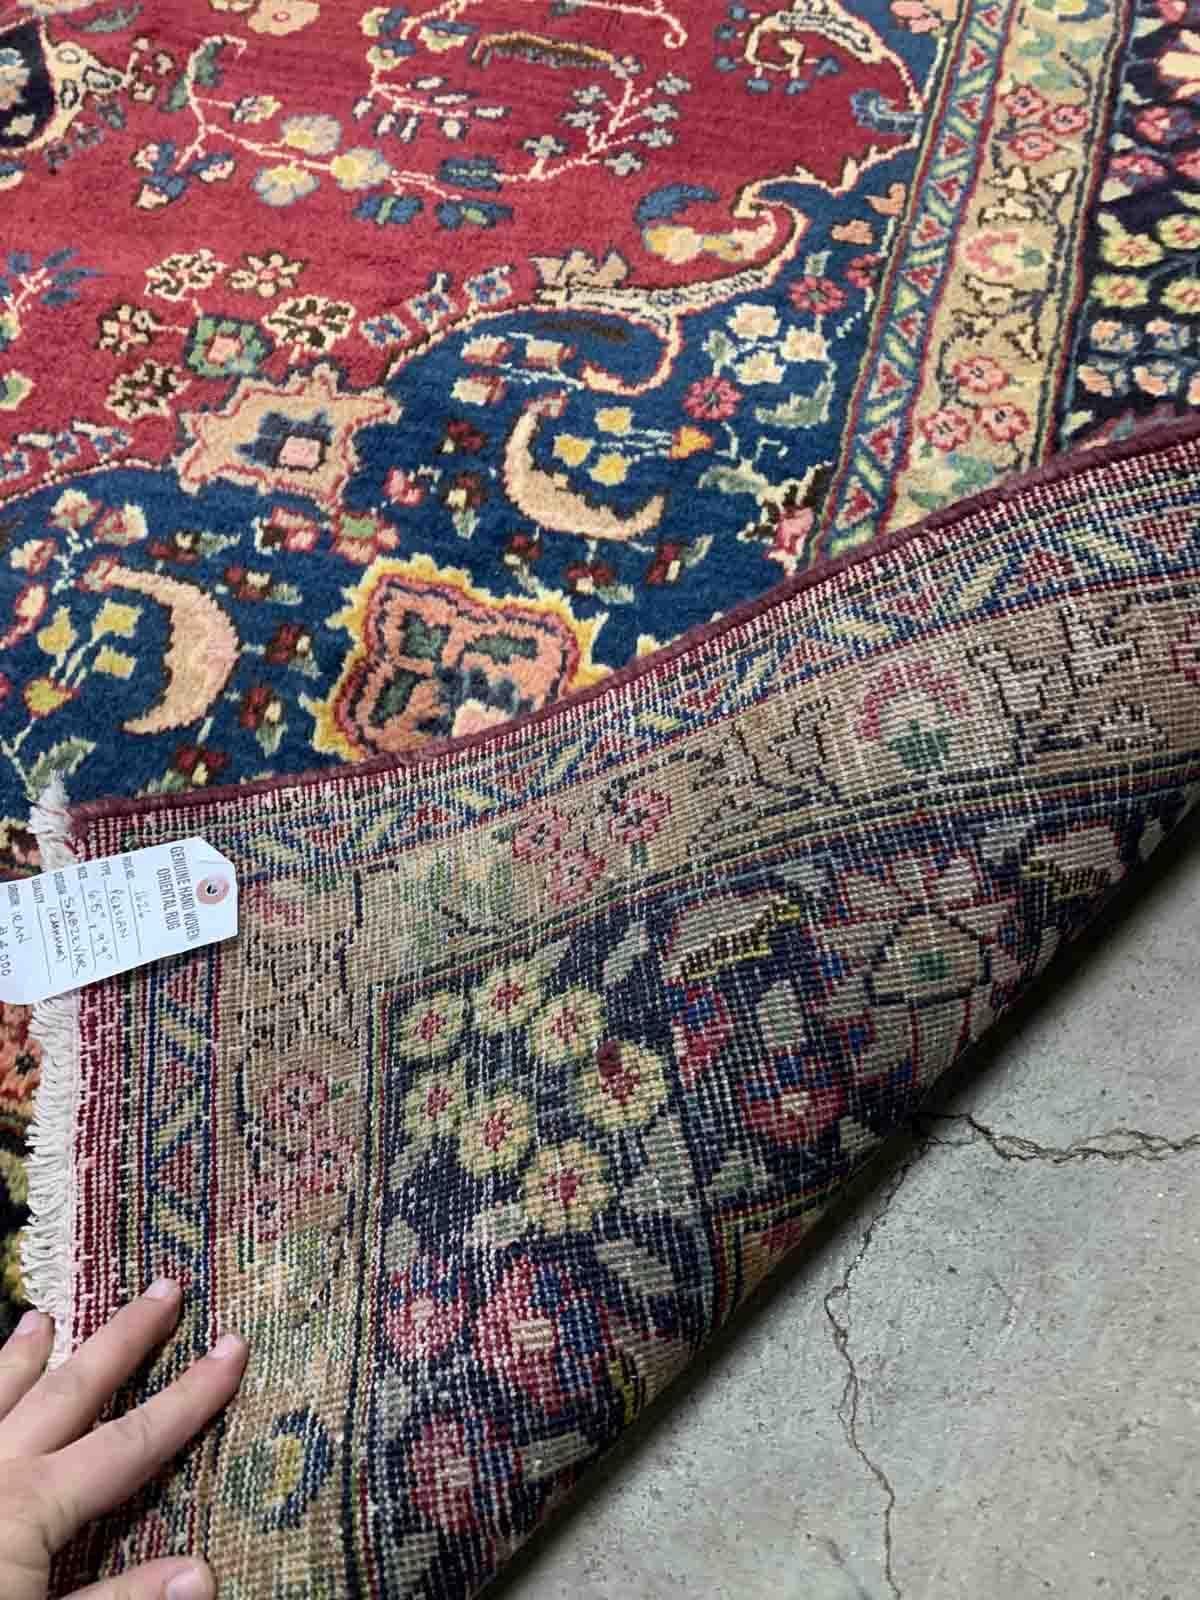 Handgefertigter Vintage-Teppich aus dem Nahen Osten in traditionellem Design. Der Teppich ist aus der Mitte des 20. Jahrhunderts und in gutem Originalzustand.

-zustand: original gut,

-etwa: 1950er Jahre,

-größe: 6,5' x 9,9' (198cm x